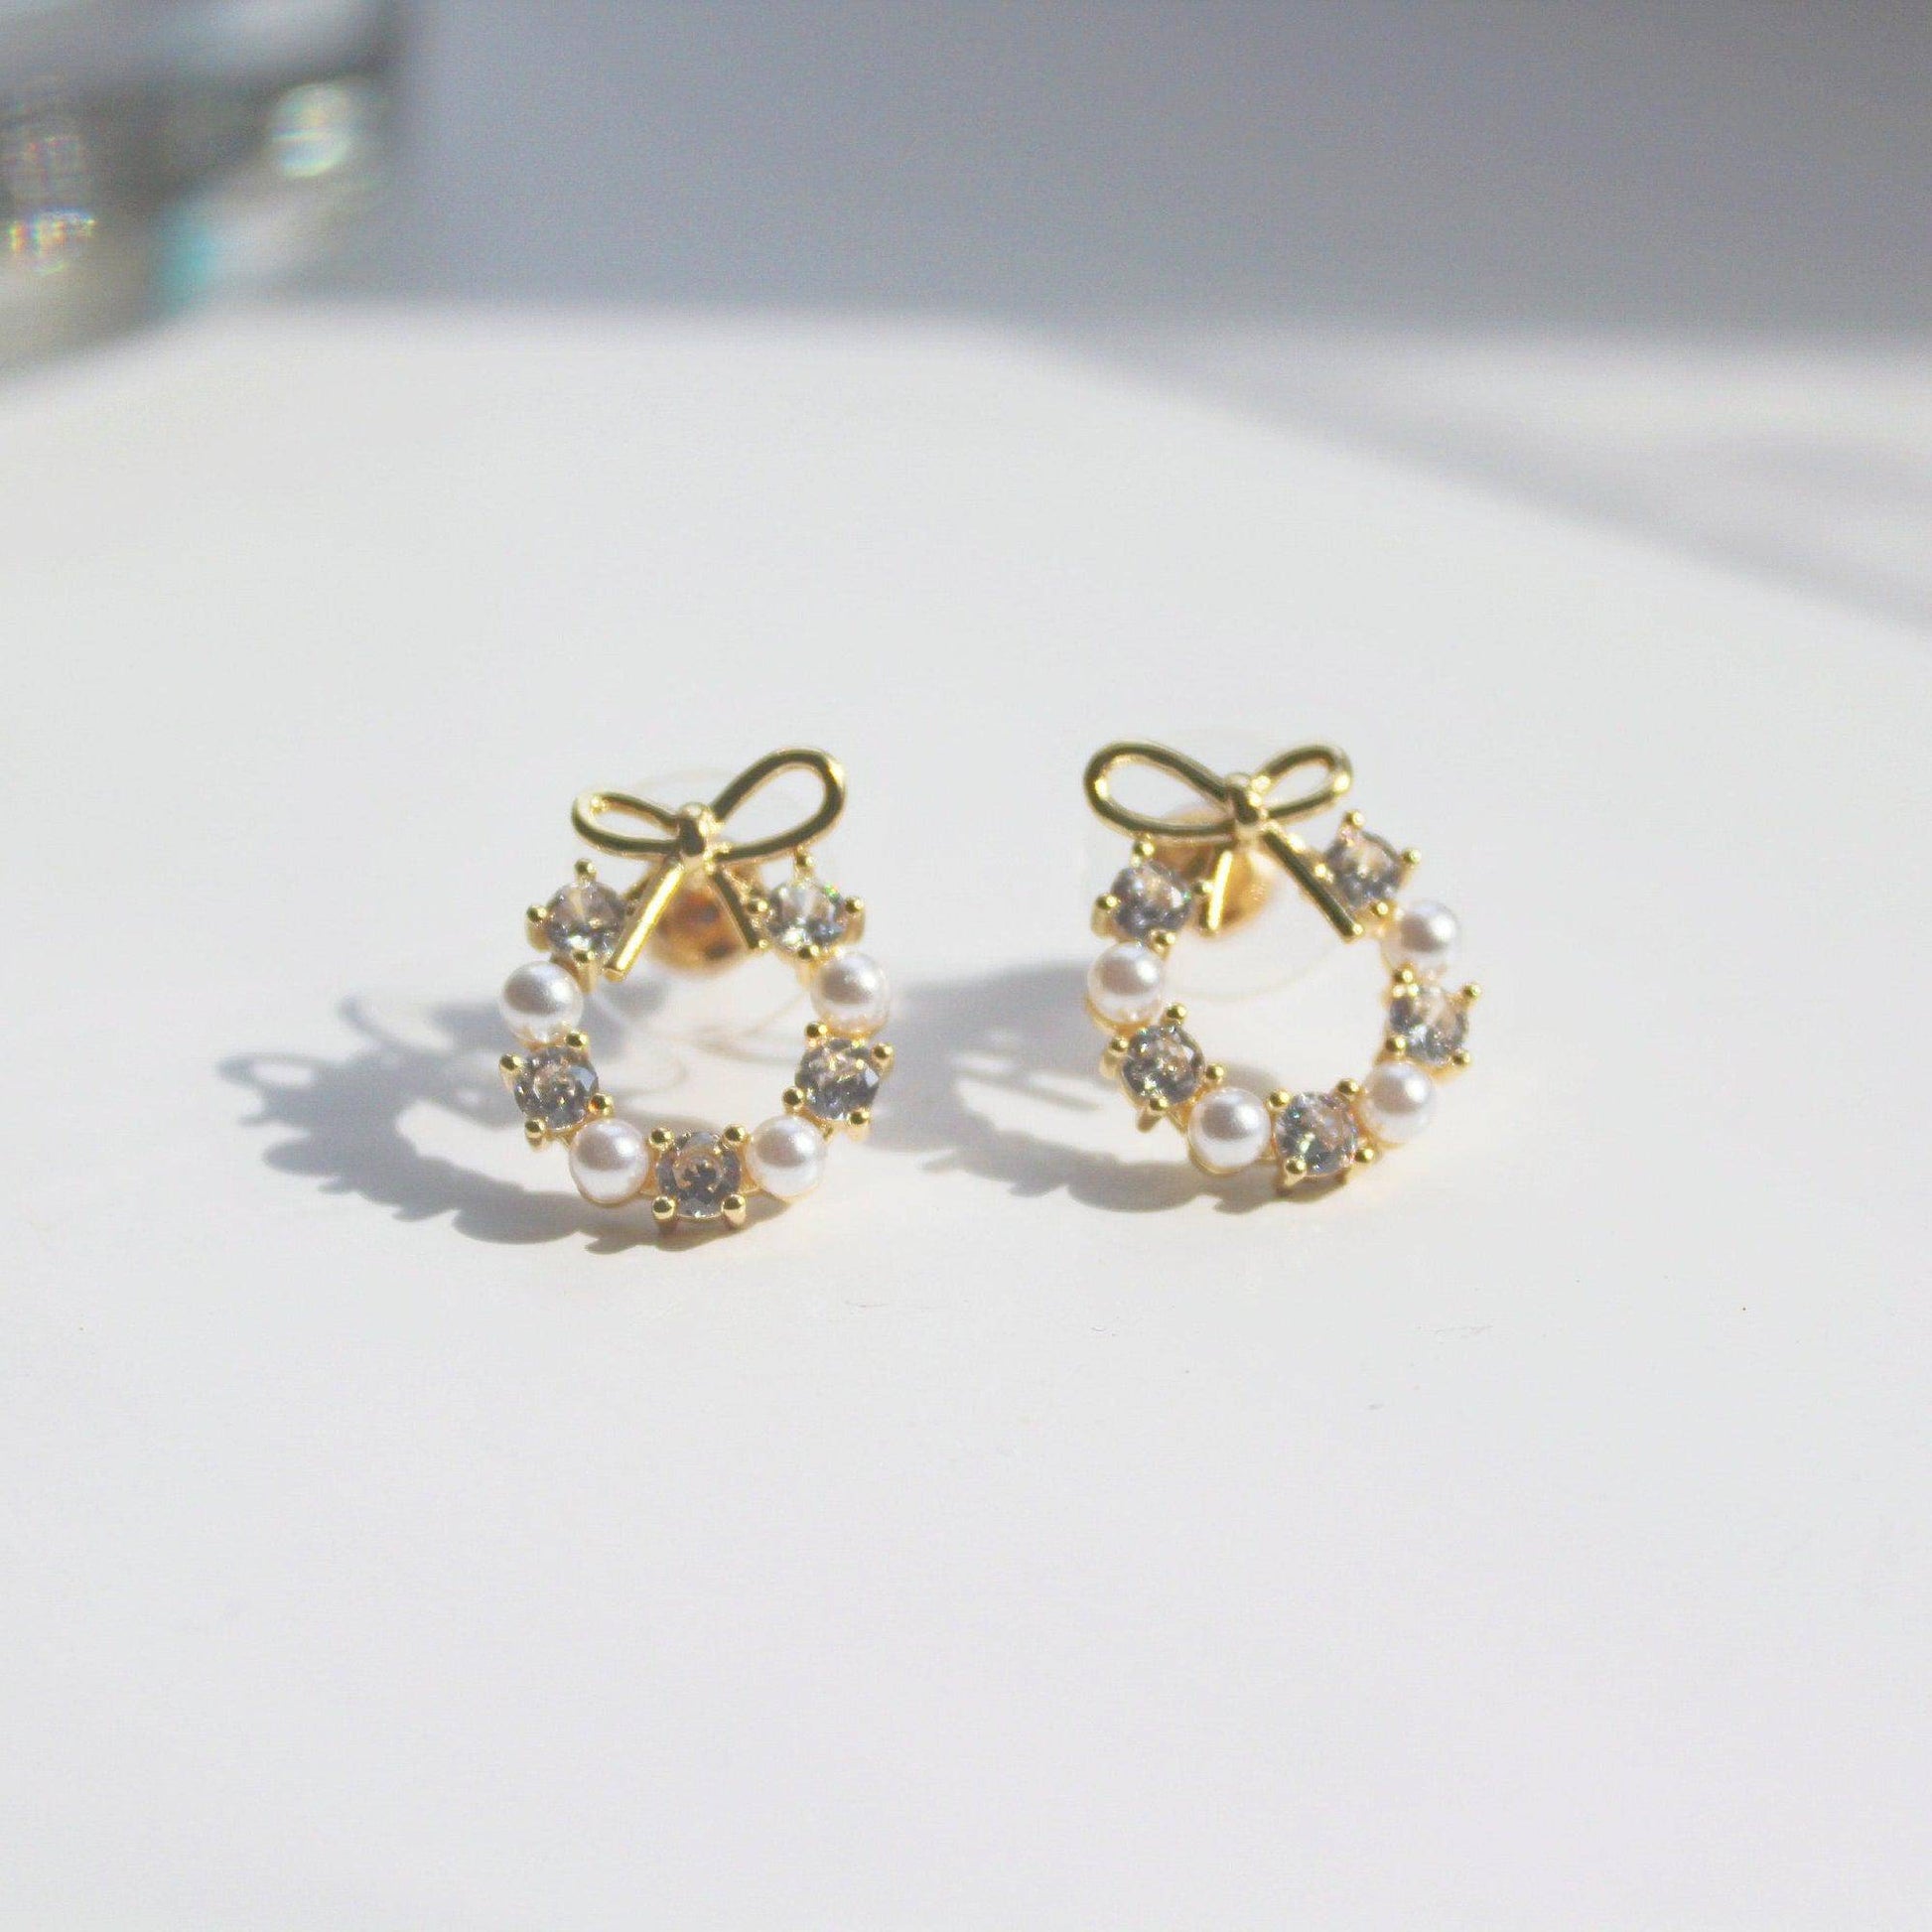 Gold Bow Tie Earrings - Mini Pearl Wreath Shape Sterling Silver Stud Earrings-Ninaouity